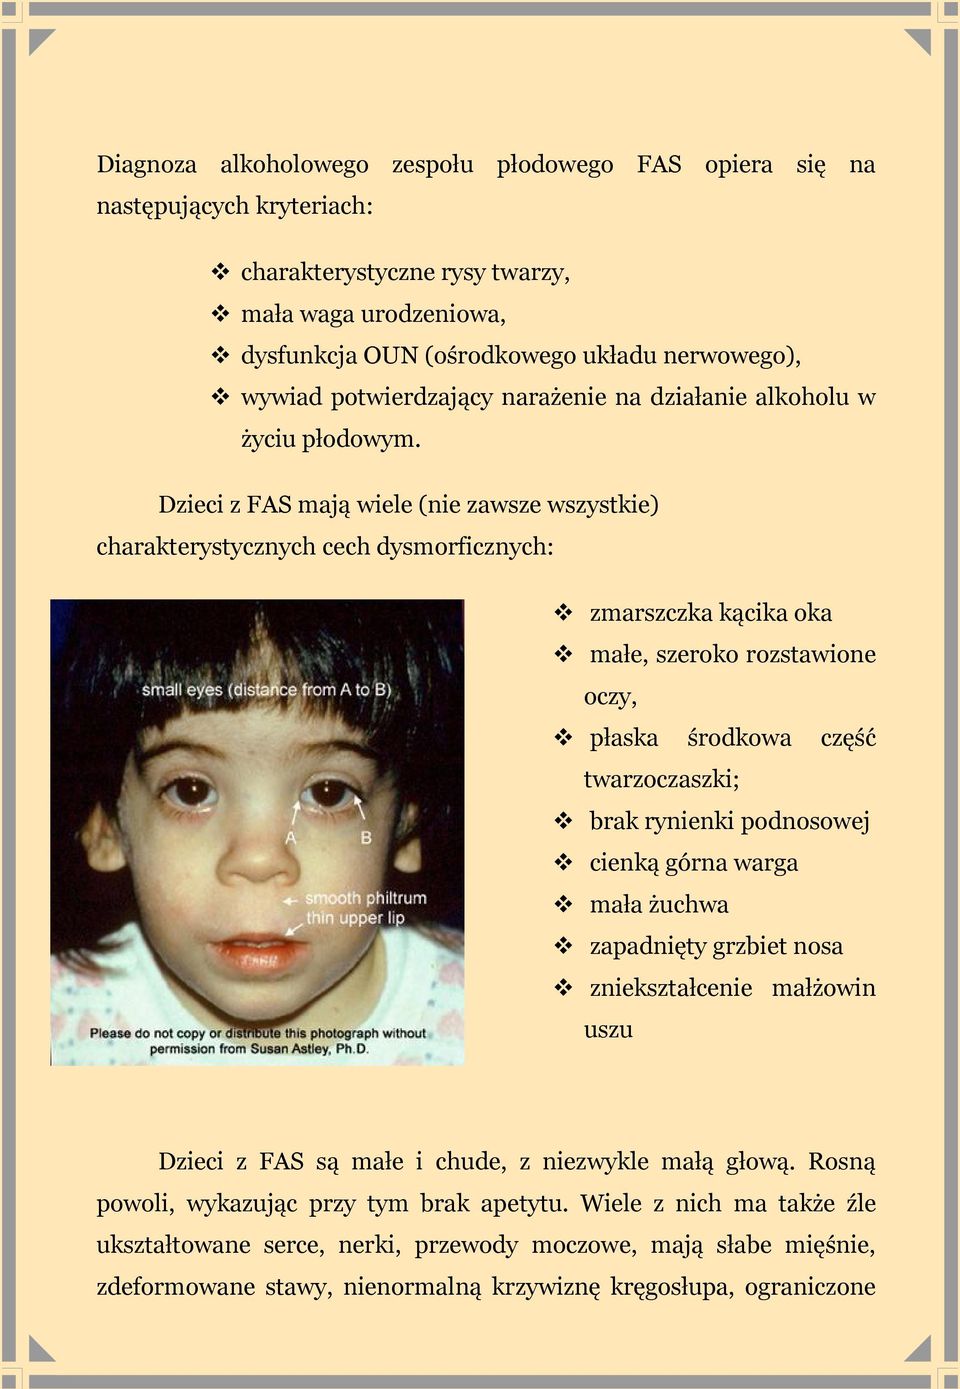 Dzieci z FAS mają wiele (nie zawsze wszystkie) charakterystycznych cech dysmorficznych: zmarszczka kącika oka małe, szeroko rozstawione oczy, płaska środkowa część twarzoczaszki; brak rynienki